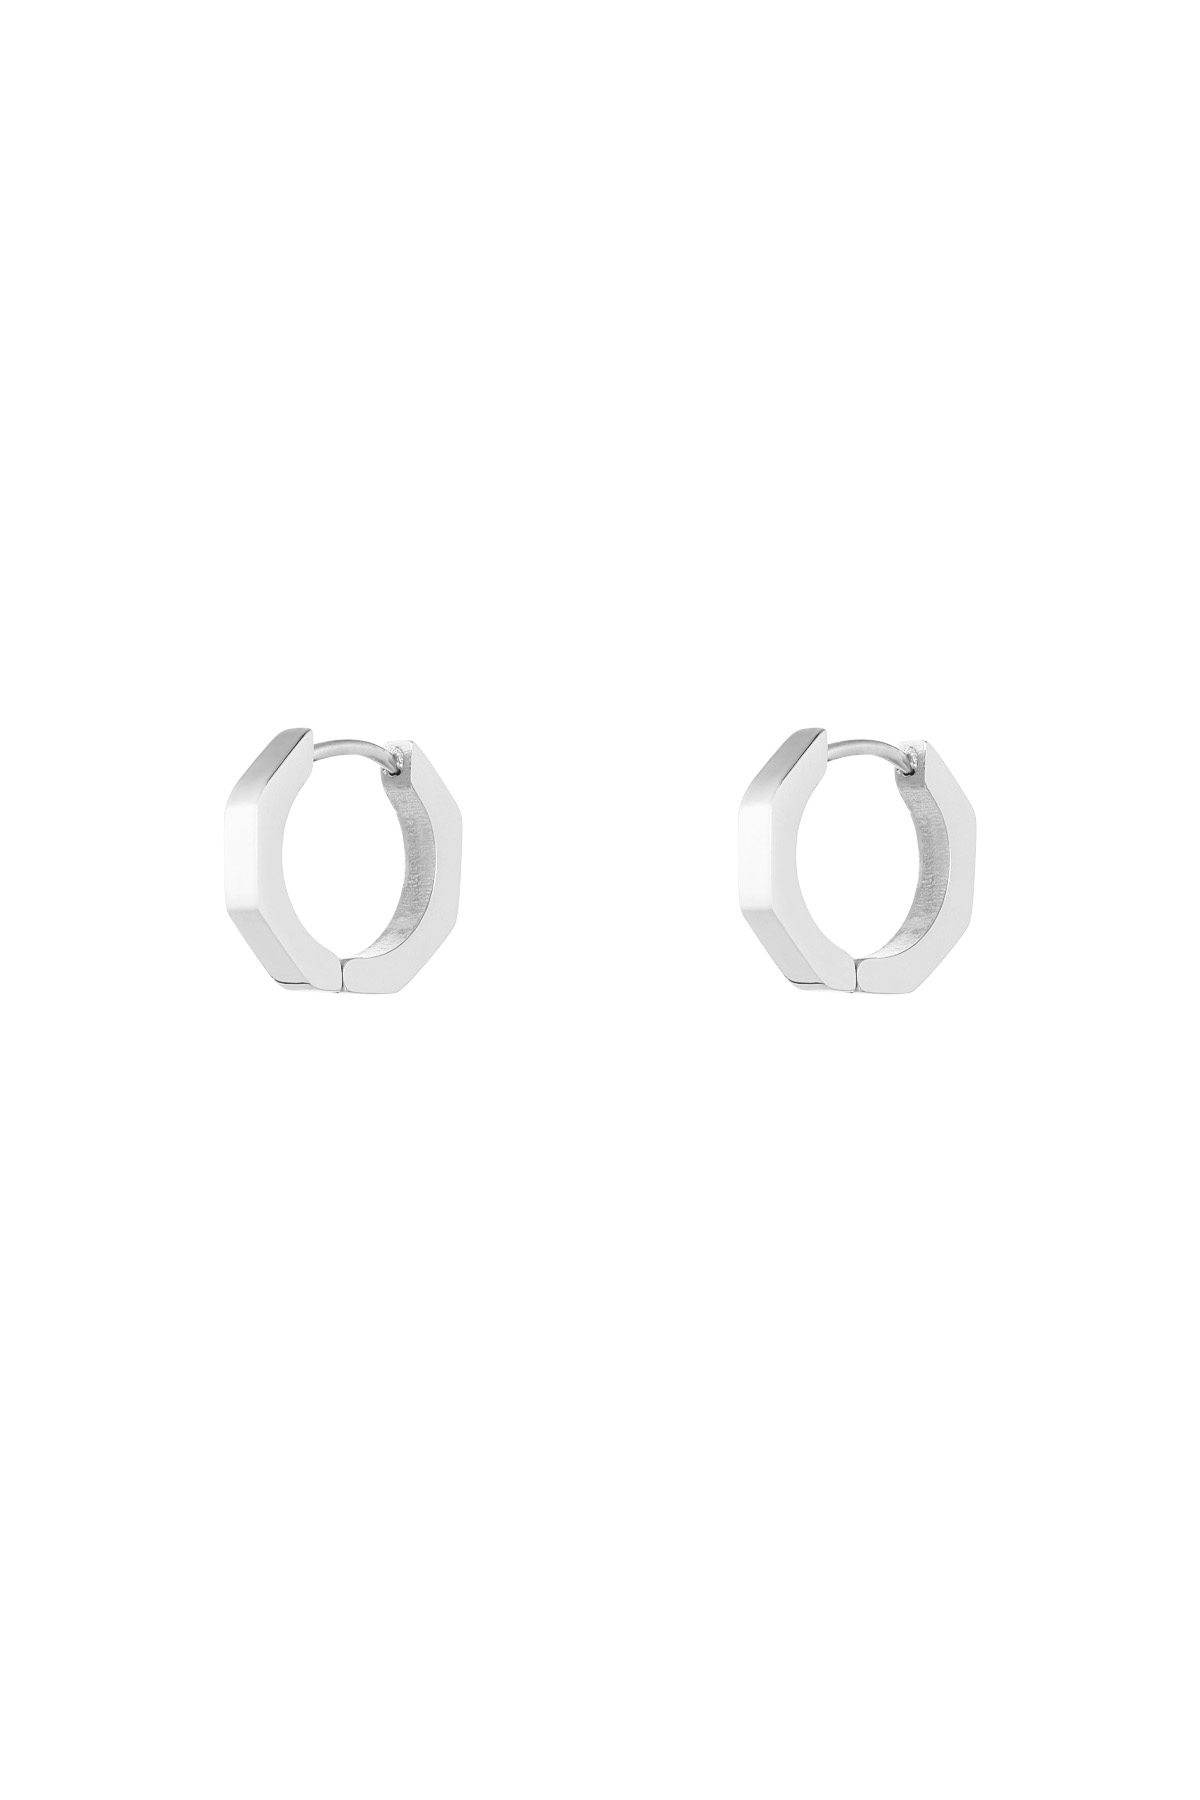 Klassische runde Ohrringe klein - Silber 